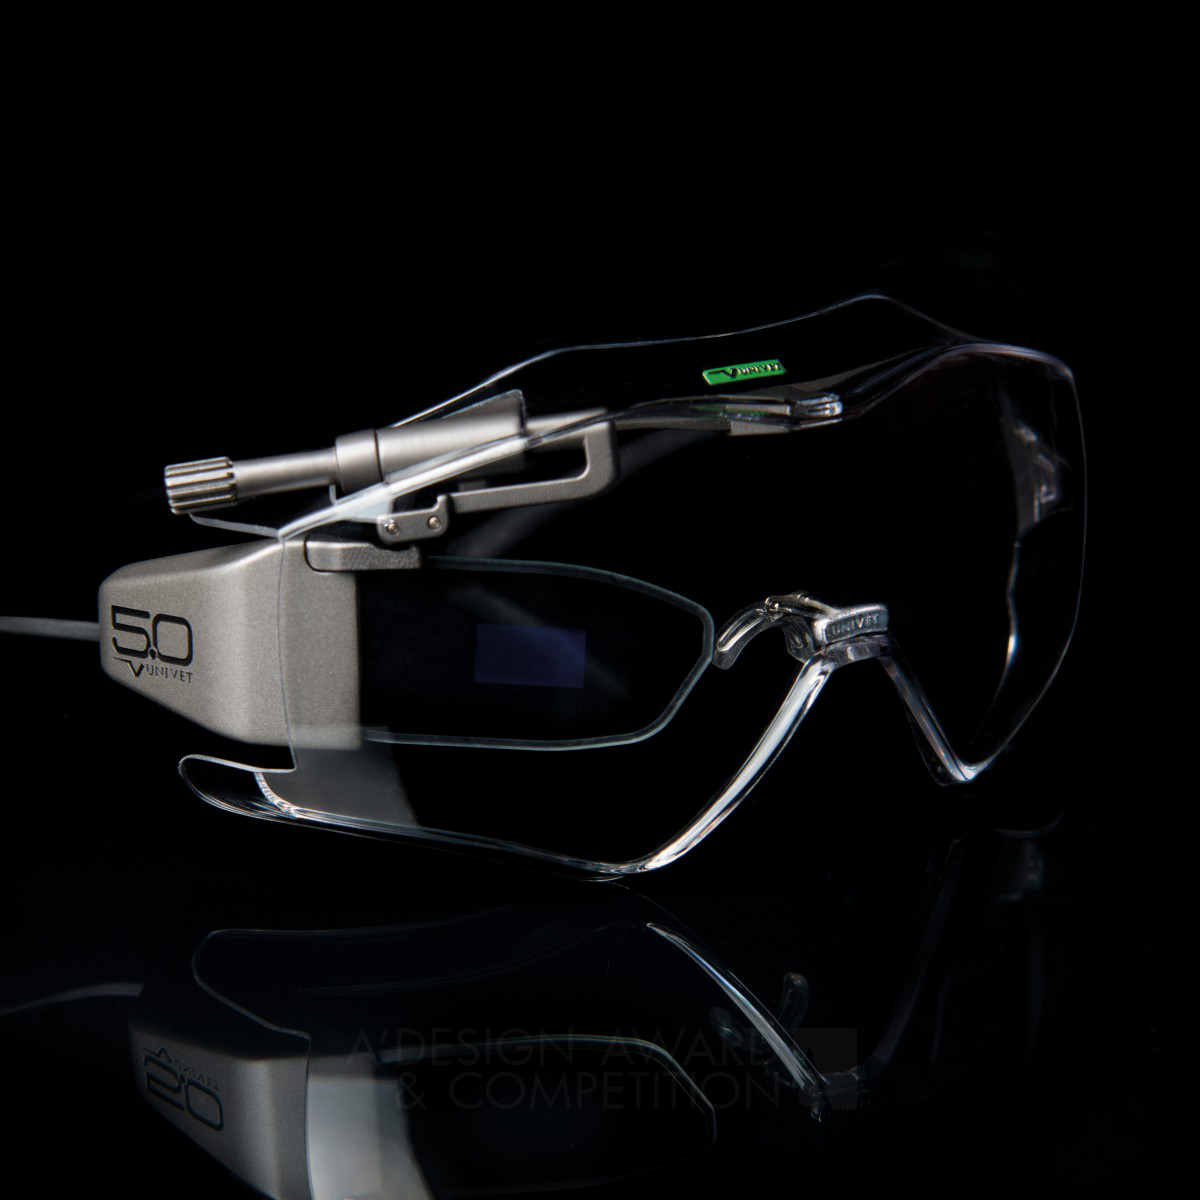 Univet 5.0 <b>safety smart glasses  